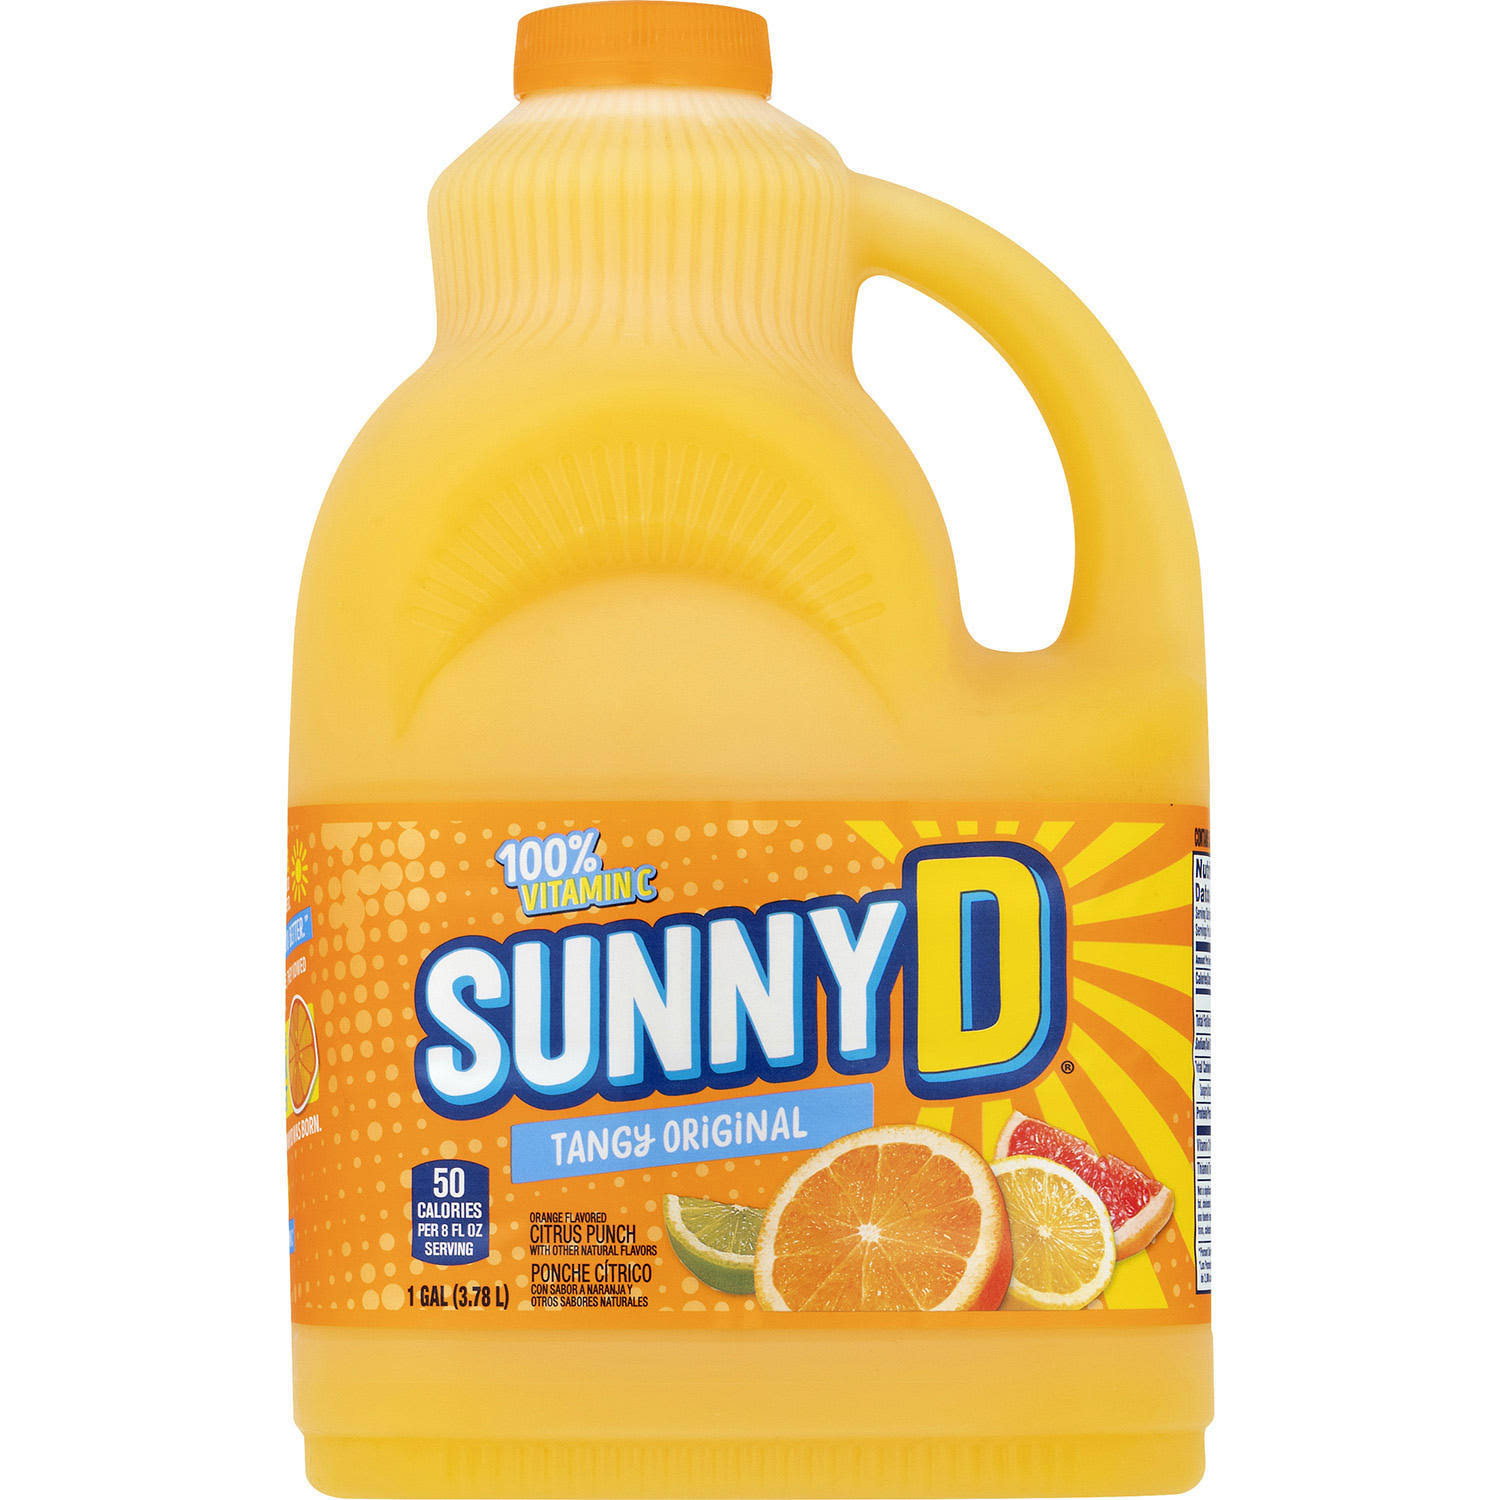 Sunny D Citrus Punch - Orange Flavored, Tangy Original - 1gal